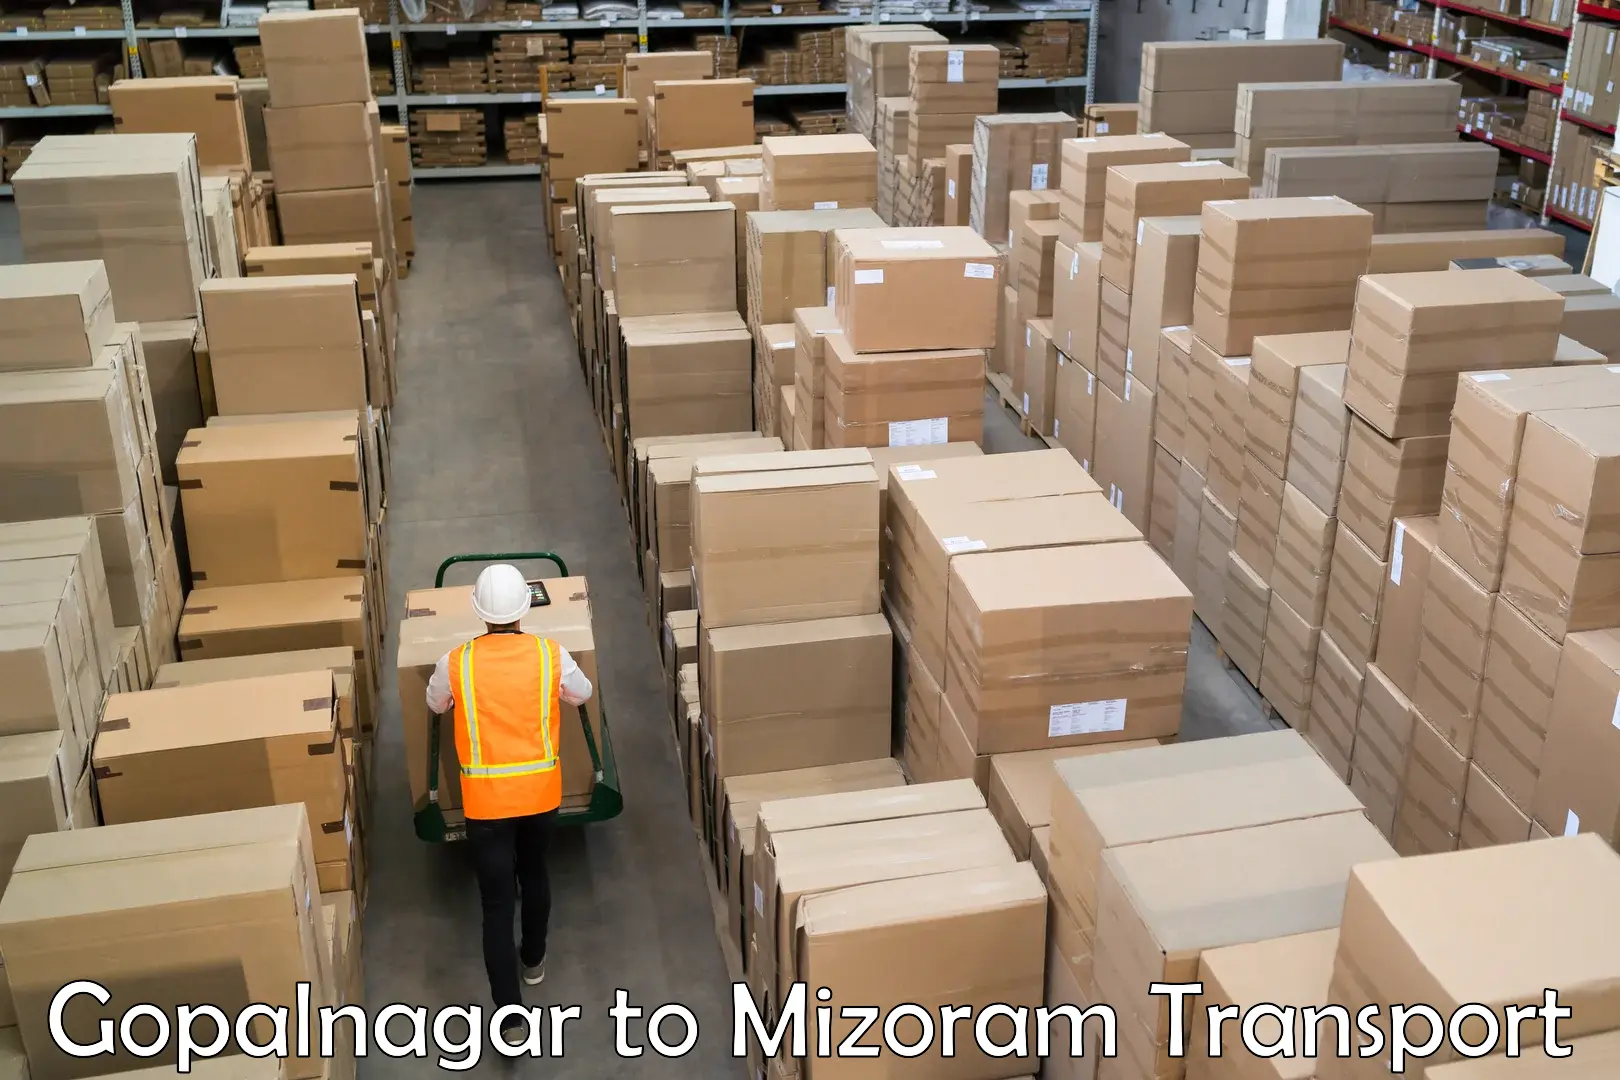 Container transport service in Gopalnagar to Mizoram